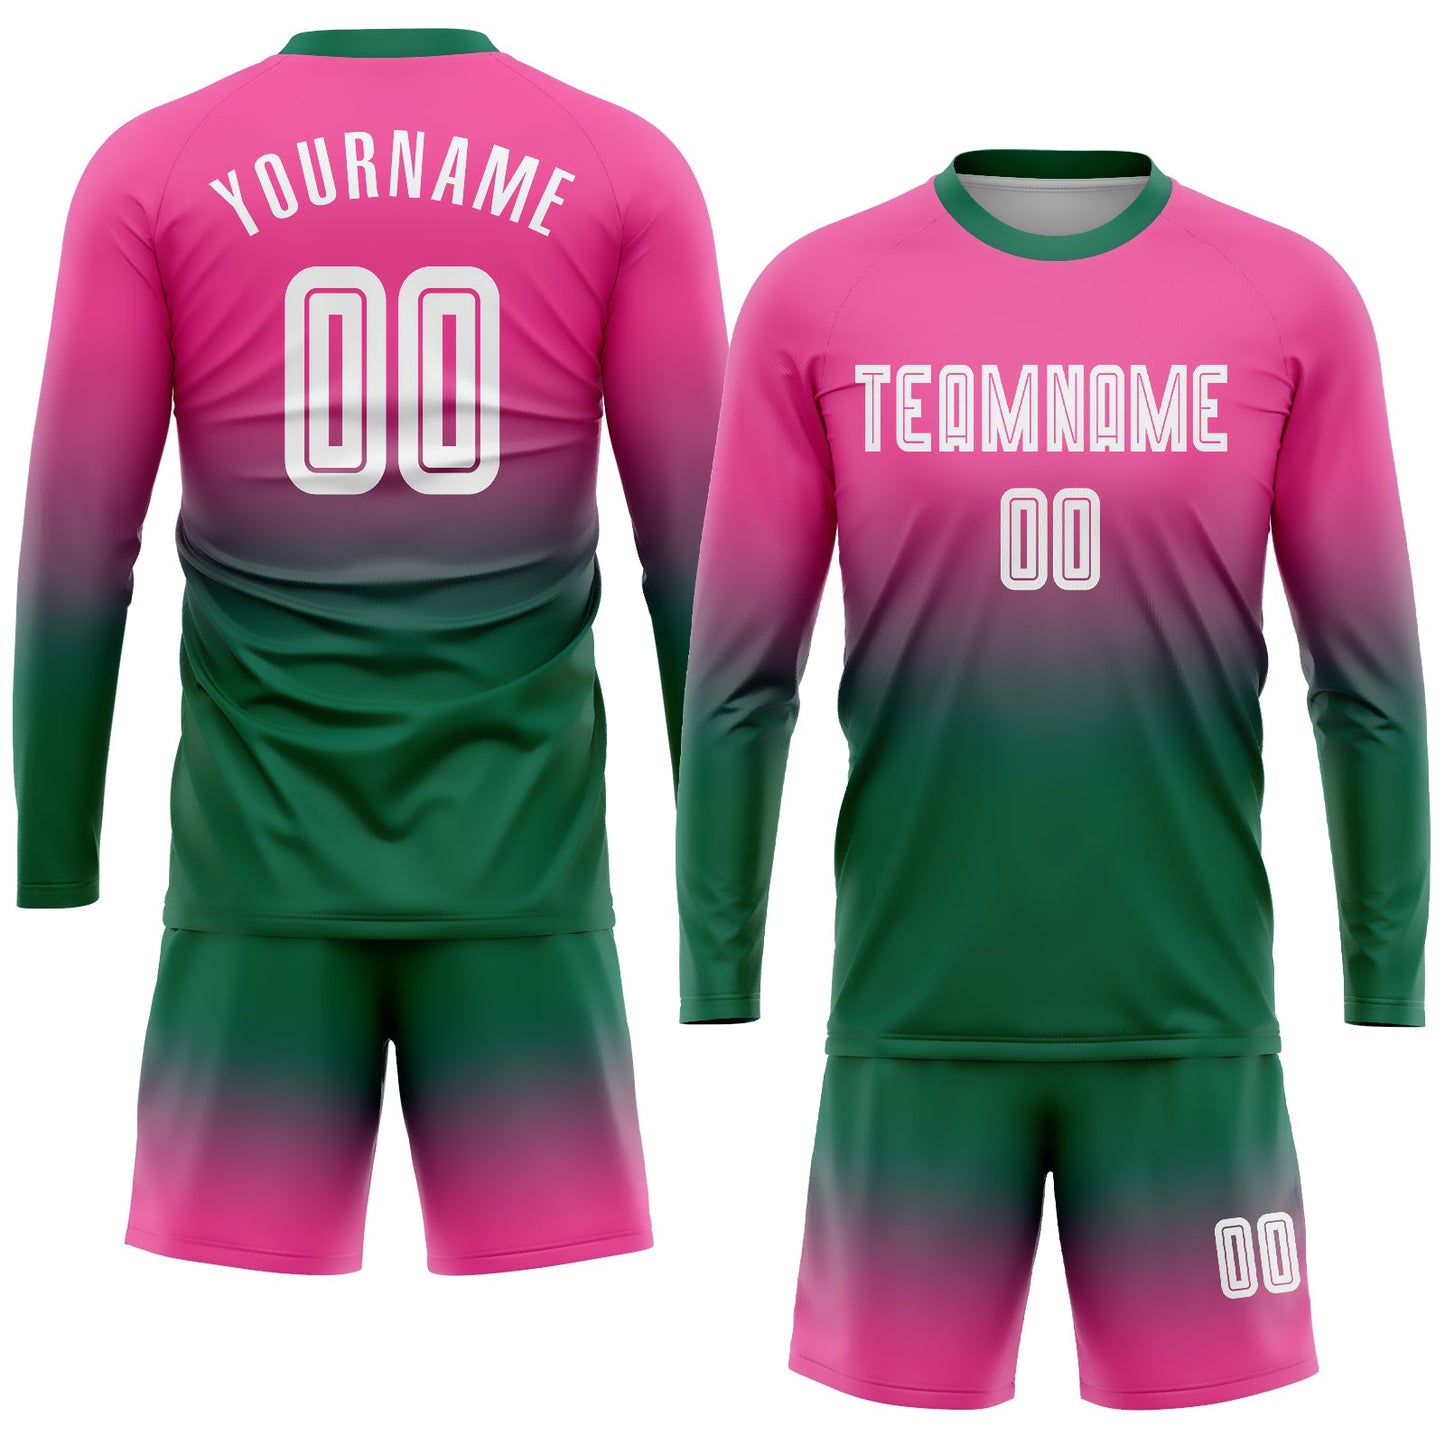 Maillot d'uniforme de football à manches longues, personnalisé, rose, blanc, vert Kelly, par Sublimation, à la mode, fondu